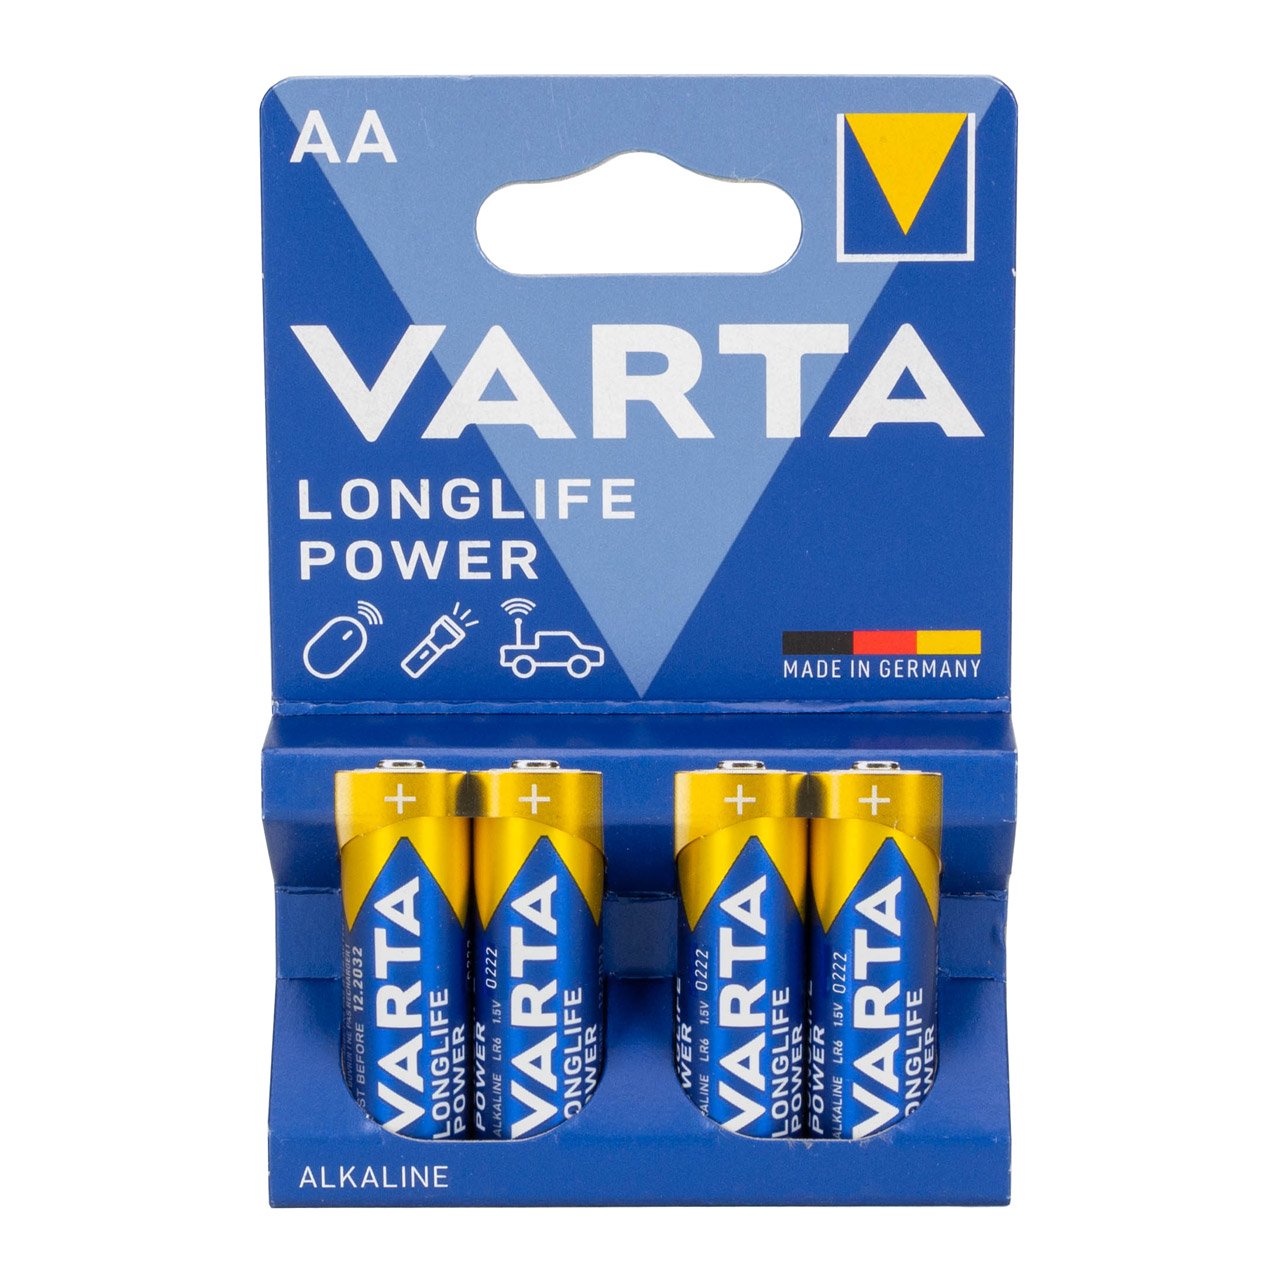 4x VARTA LONGLIFE POWER ALKALINE Batterie AA MIGNON 4906 LR6 MN1500 1,5V